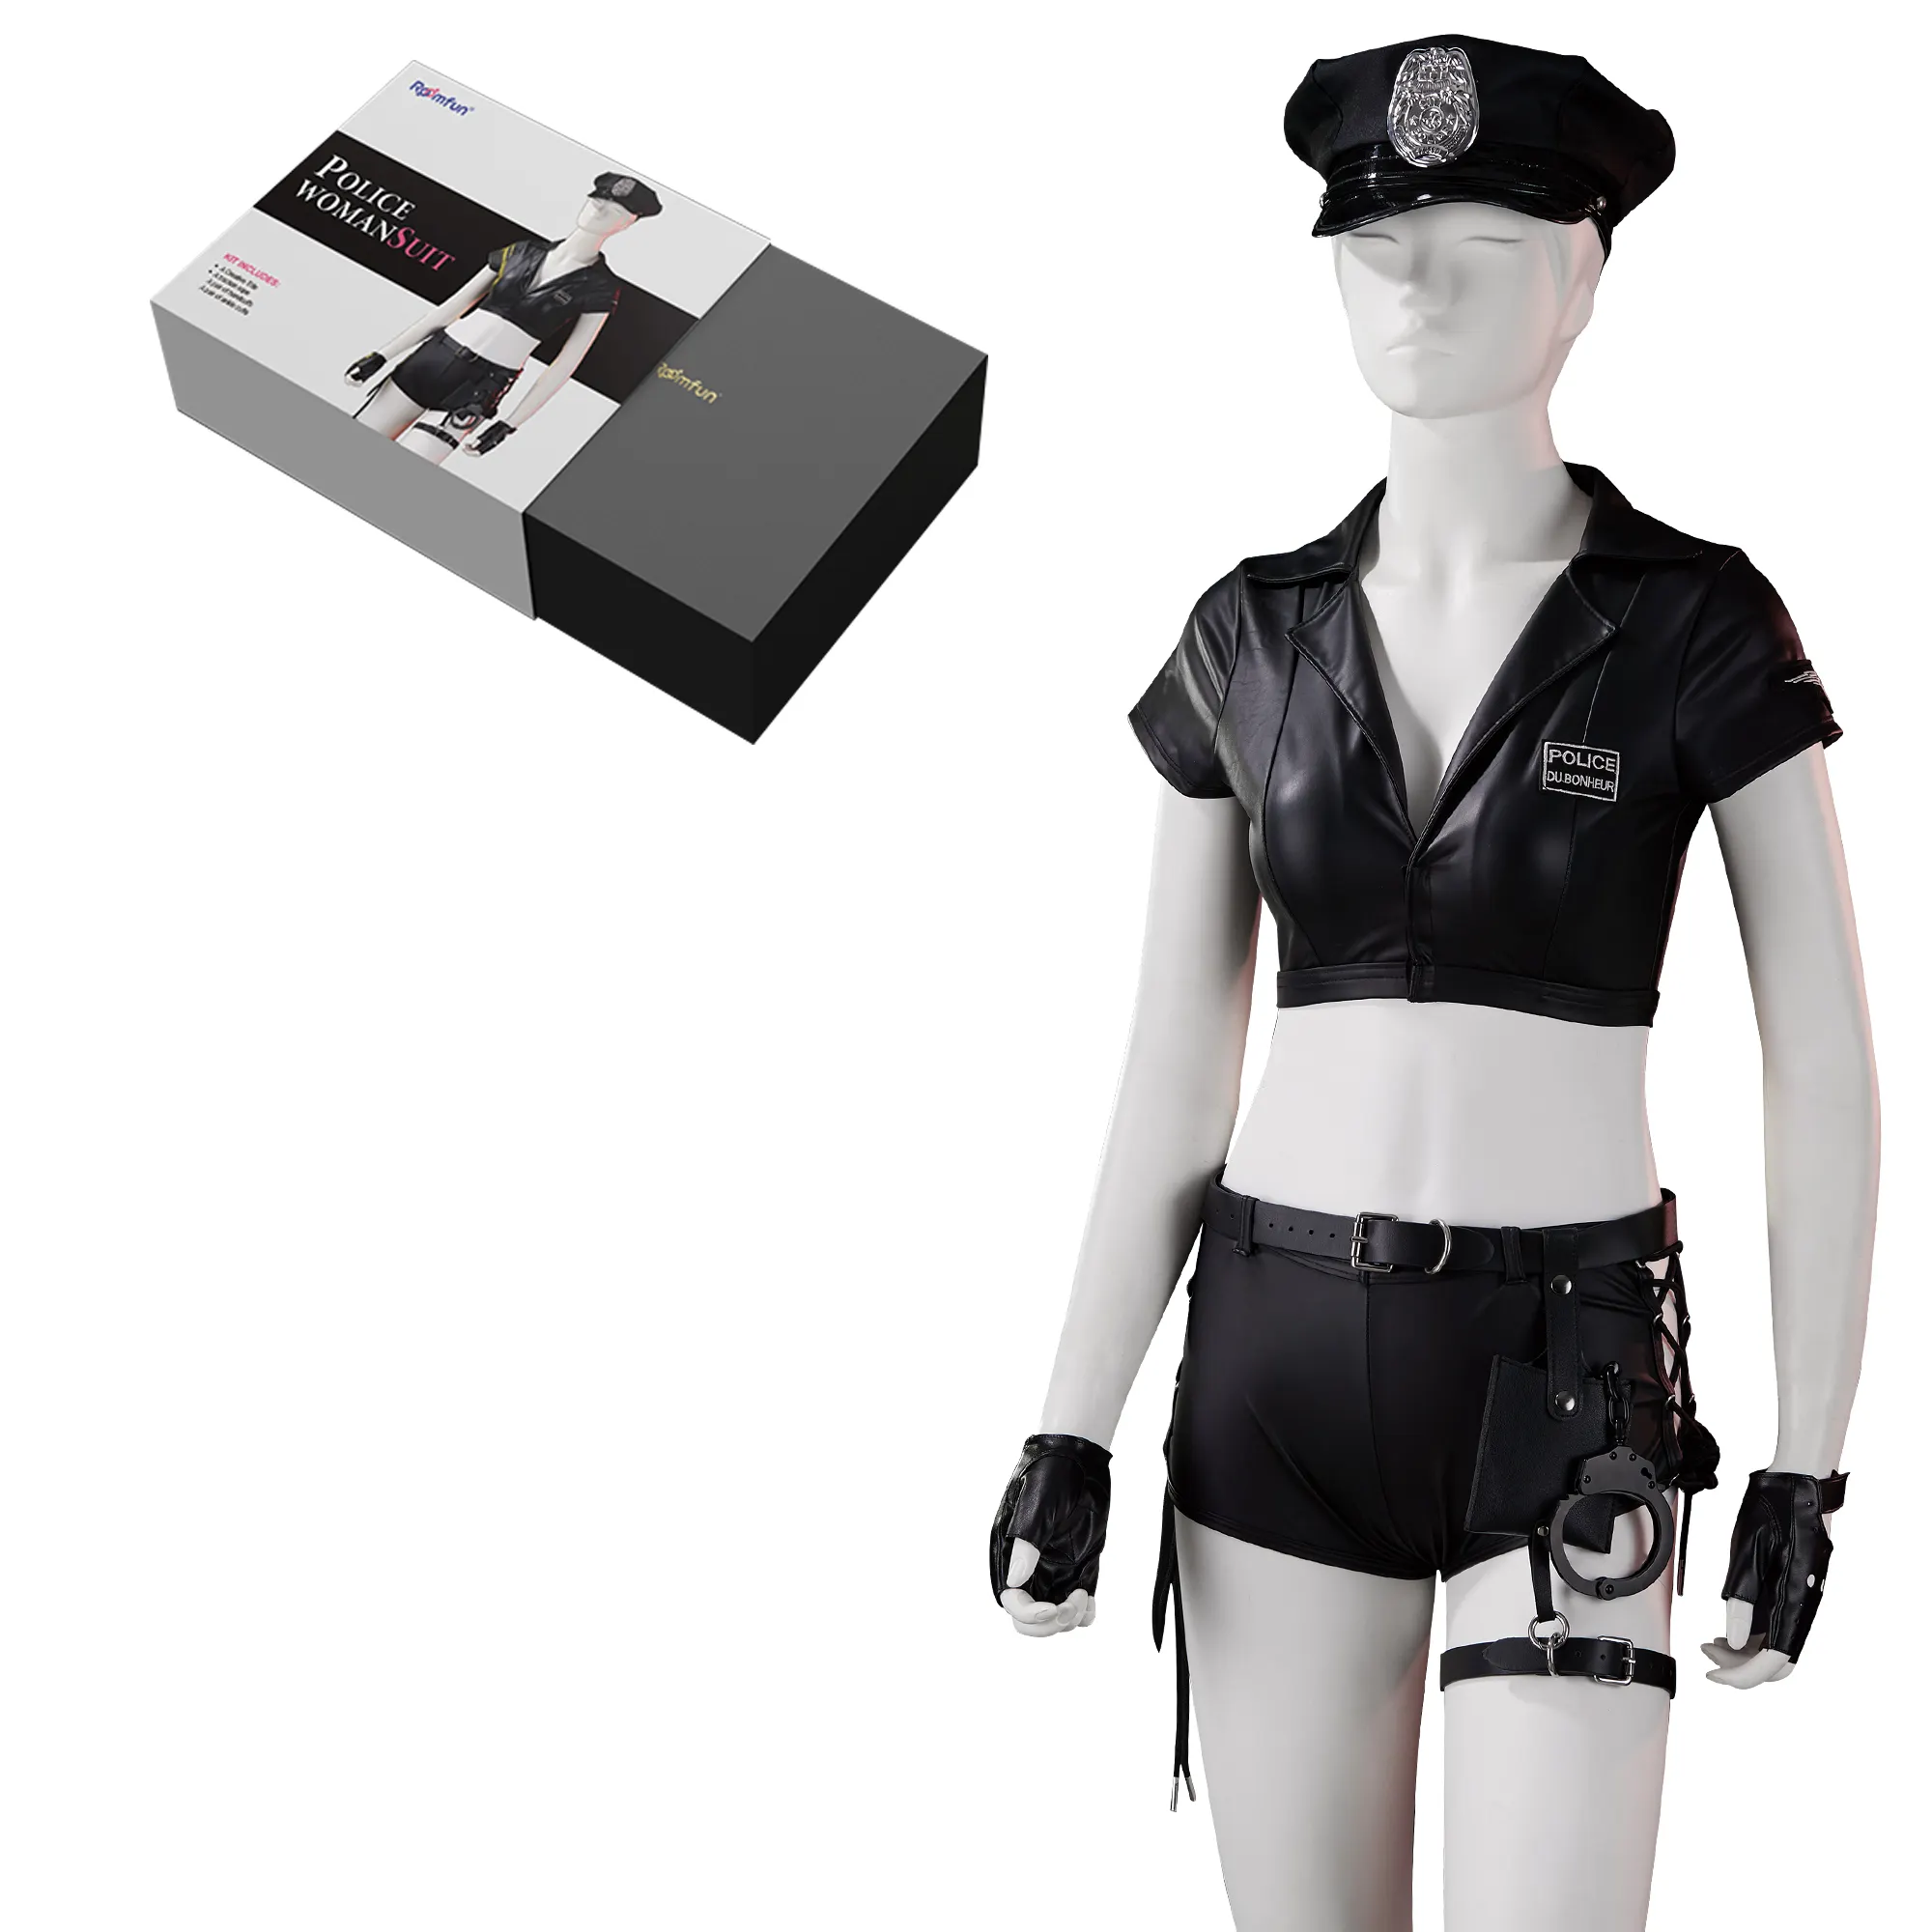 БДСМ, высокое качество, горячая Распродажа, сексуальный костюм полицейской женщины, комплект бондажа, костюм для взрослых для косплея, костюм для лихорадки